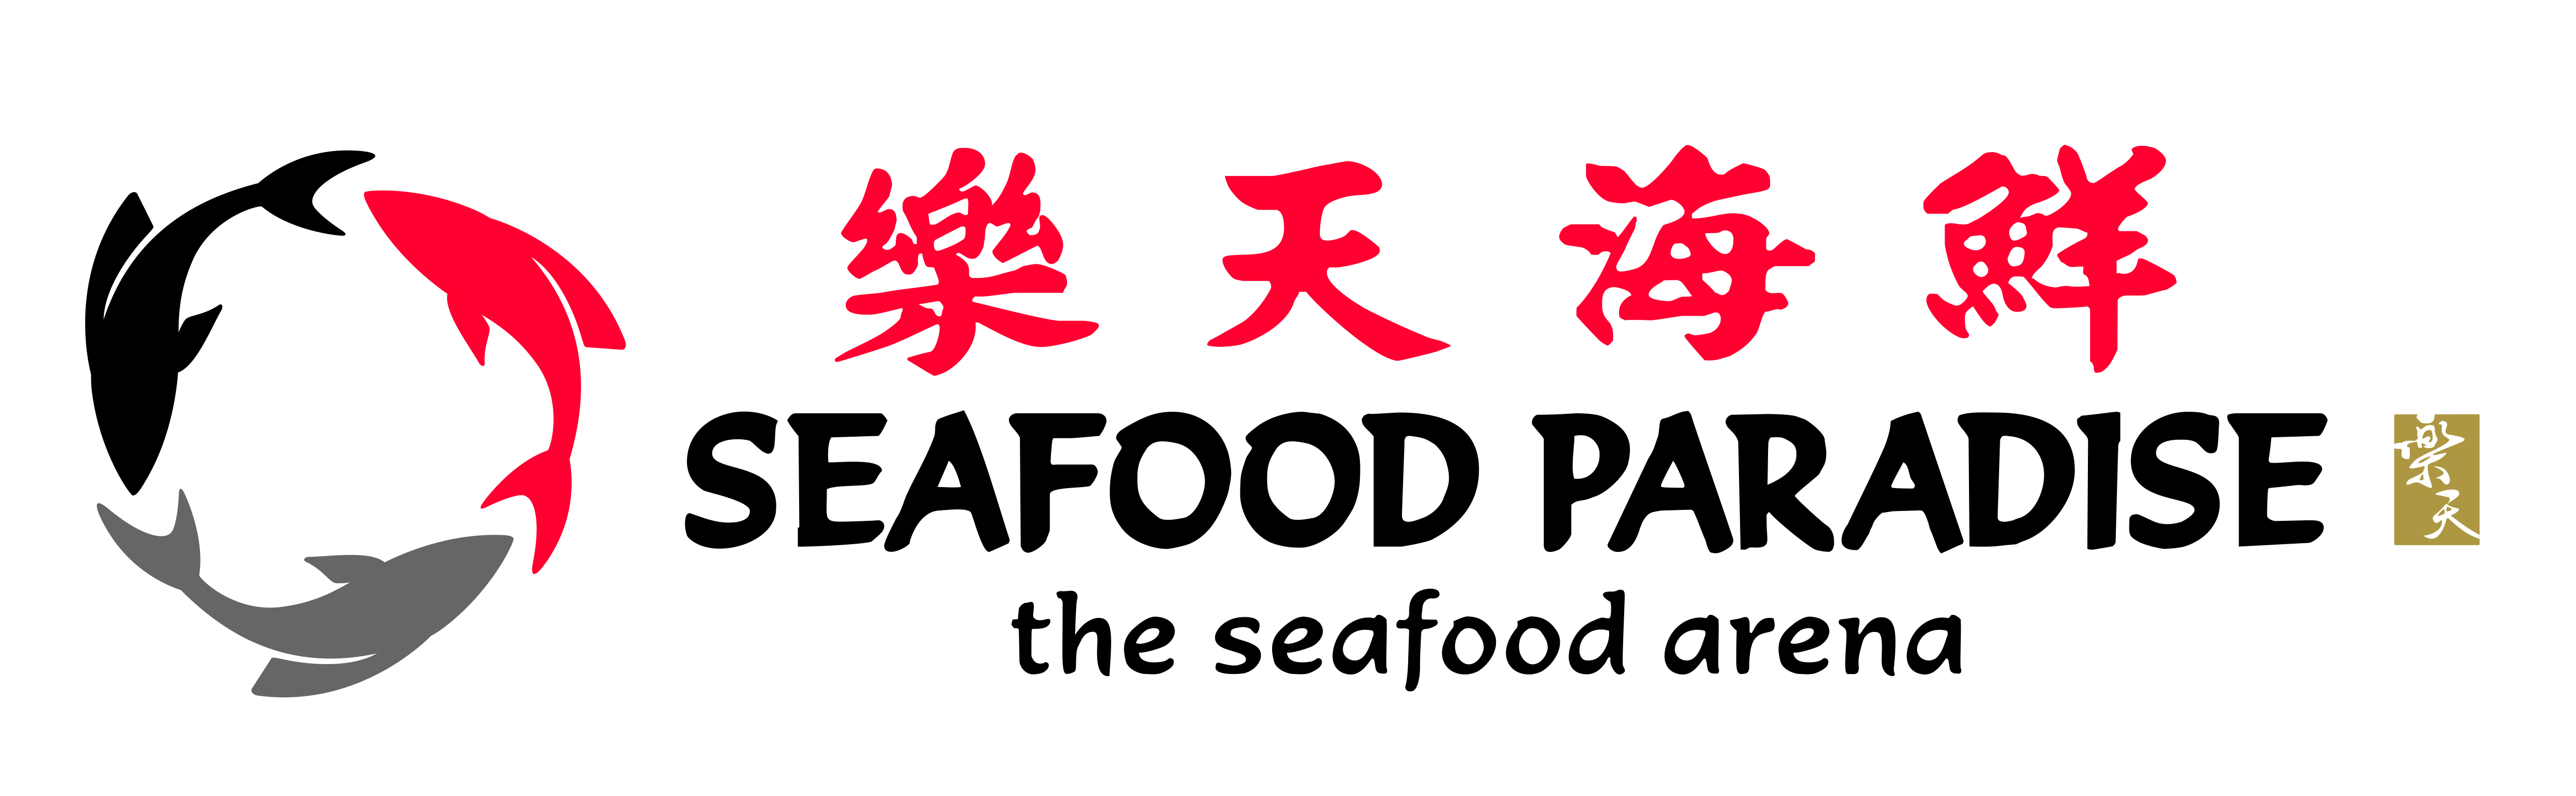 Seafood Paradise